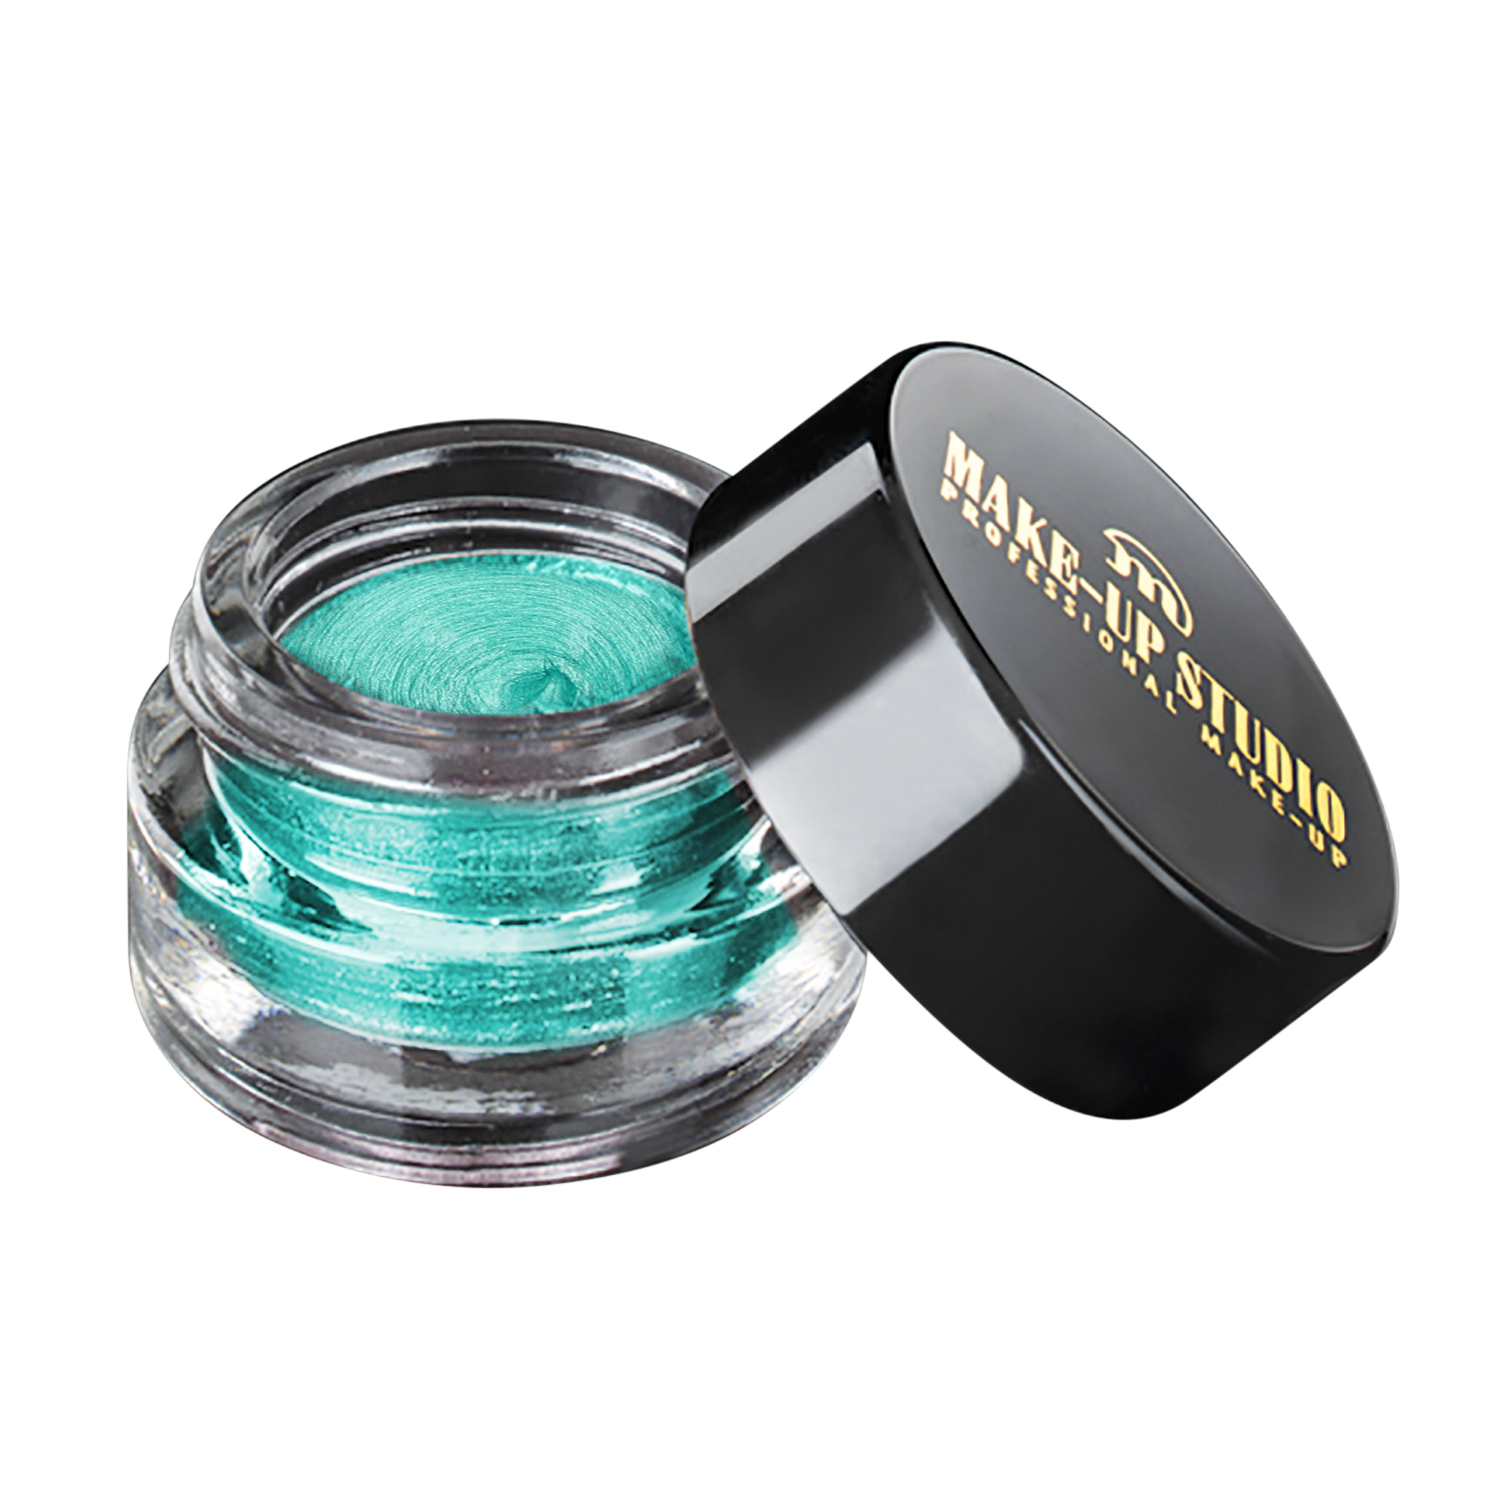 Make-up Studio Durable Eyeshadow Mousse Oogschaduw - Edgy Emerald